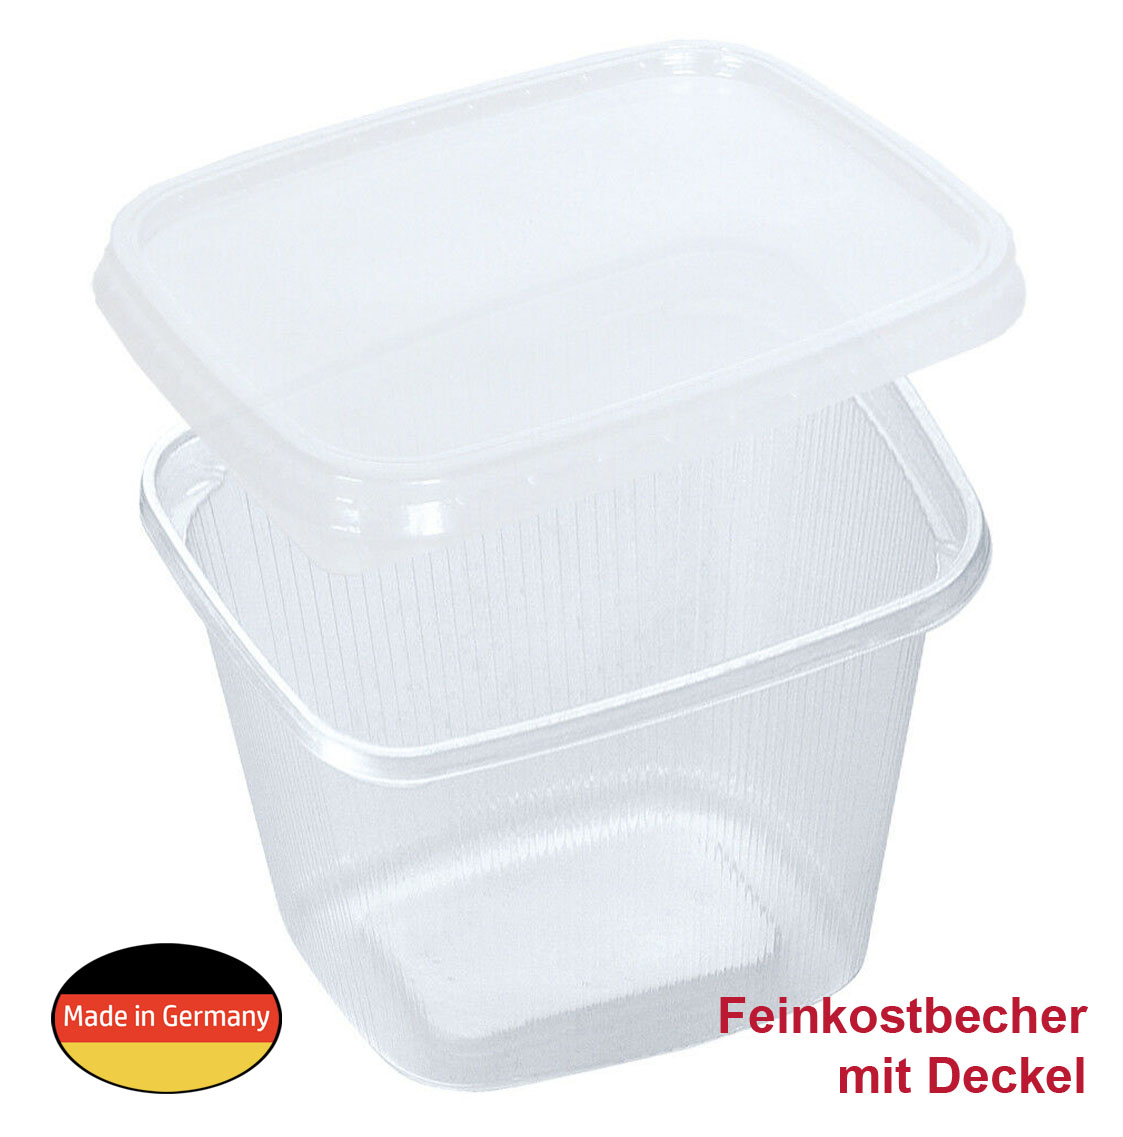 MEHRWEG Feinkost- Salat- und Verpackungsbecher "eckig" mit Deckel 500ml 500g Karton (250 St)